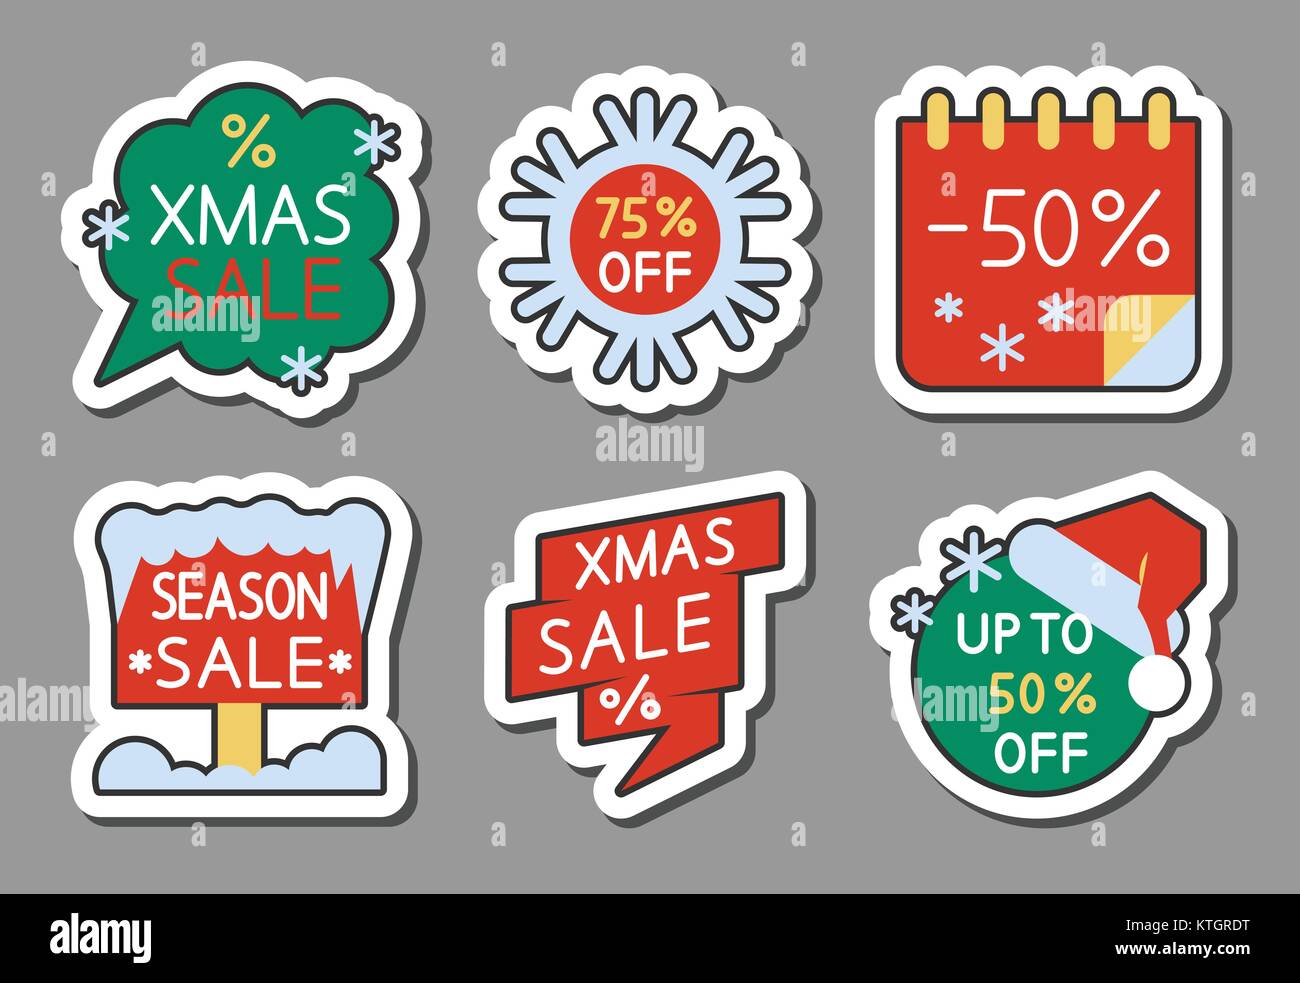 Weihnachten Saison Verkauf icon Sticker Set. Flat Style Farbe Spiel Abzeichen, Web, Werbung, Banner, Wirtschaft, Emblem, Logo, Print, Tags, Etiketten, Poster, coupon Isola Stock Vektor